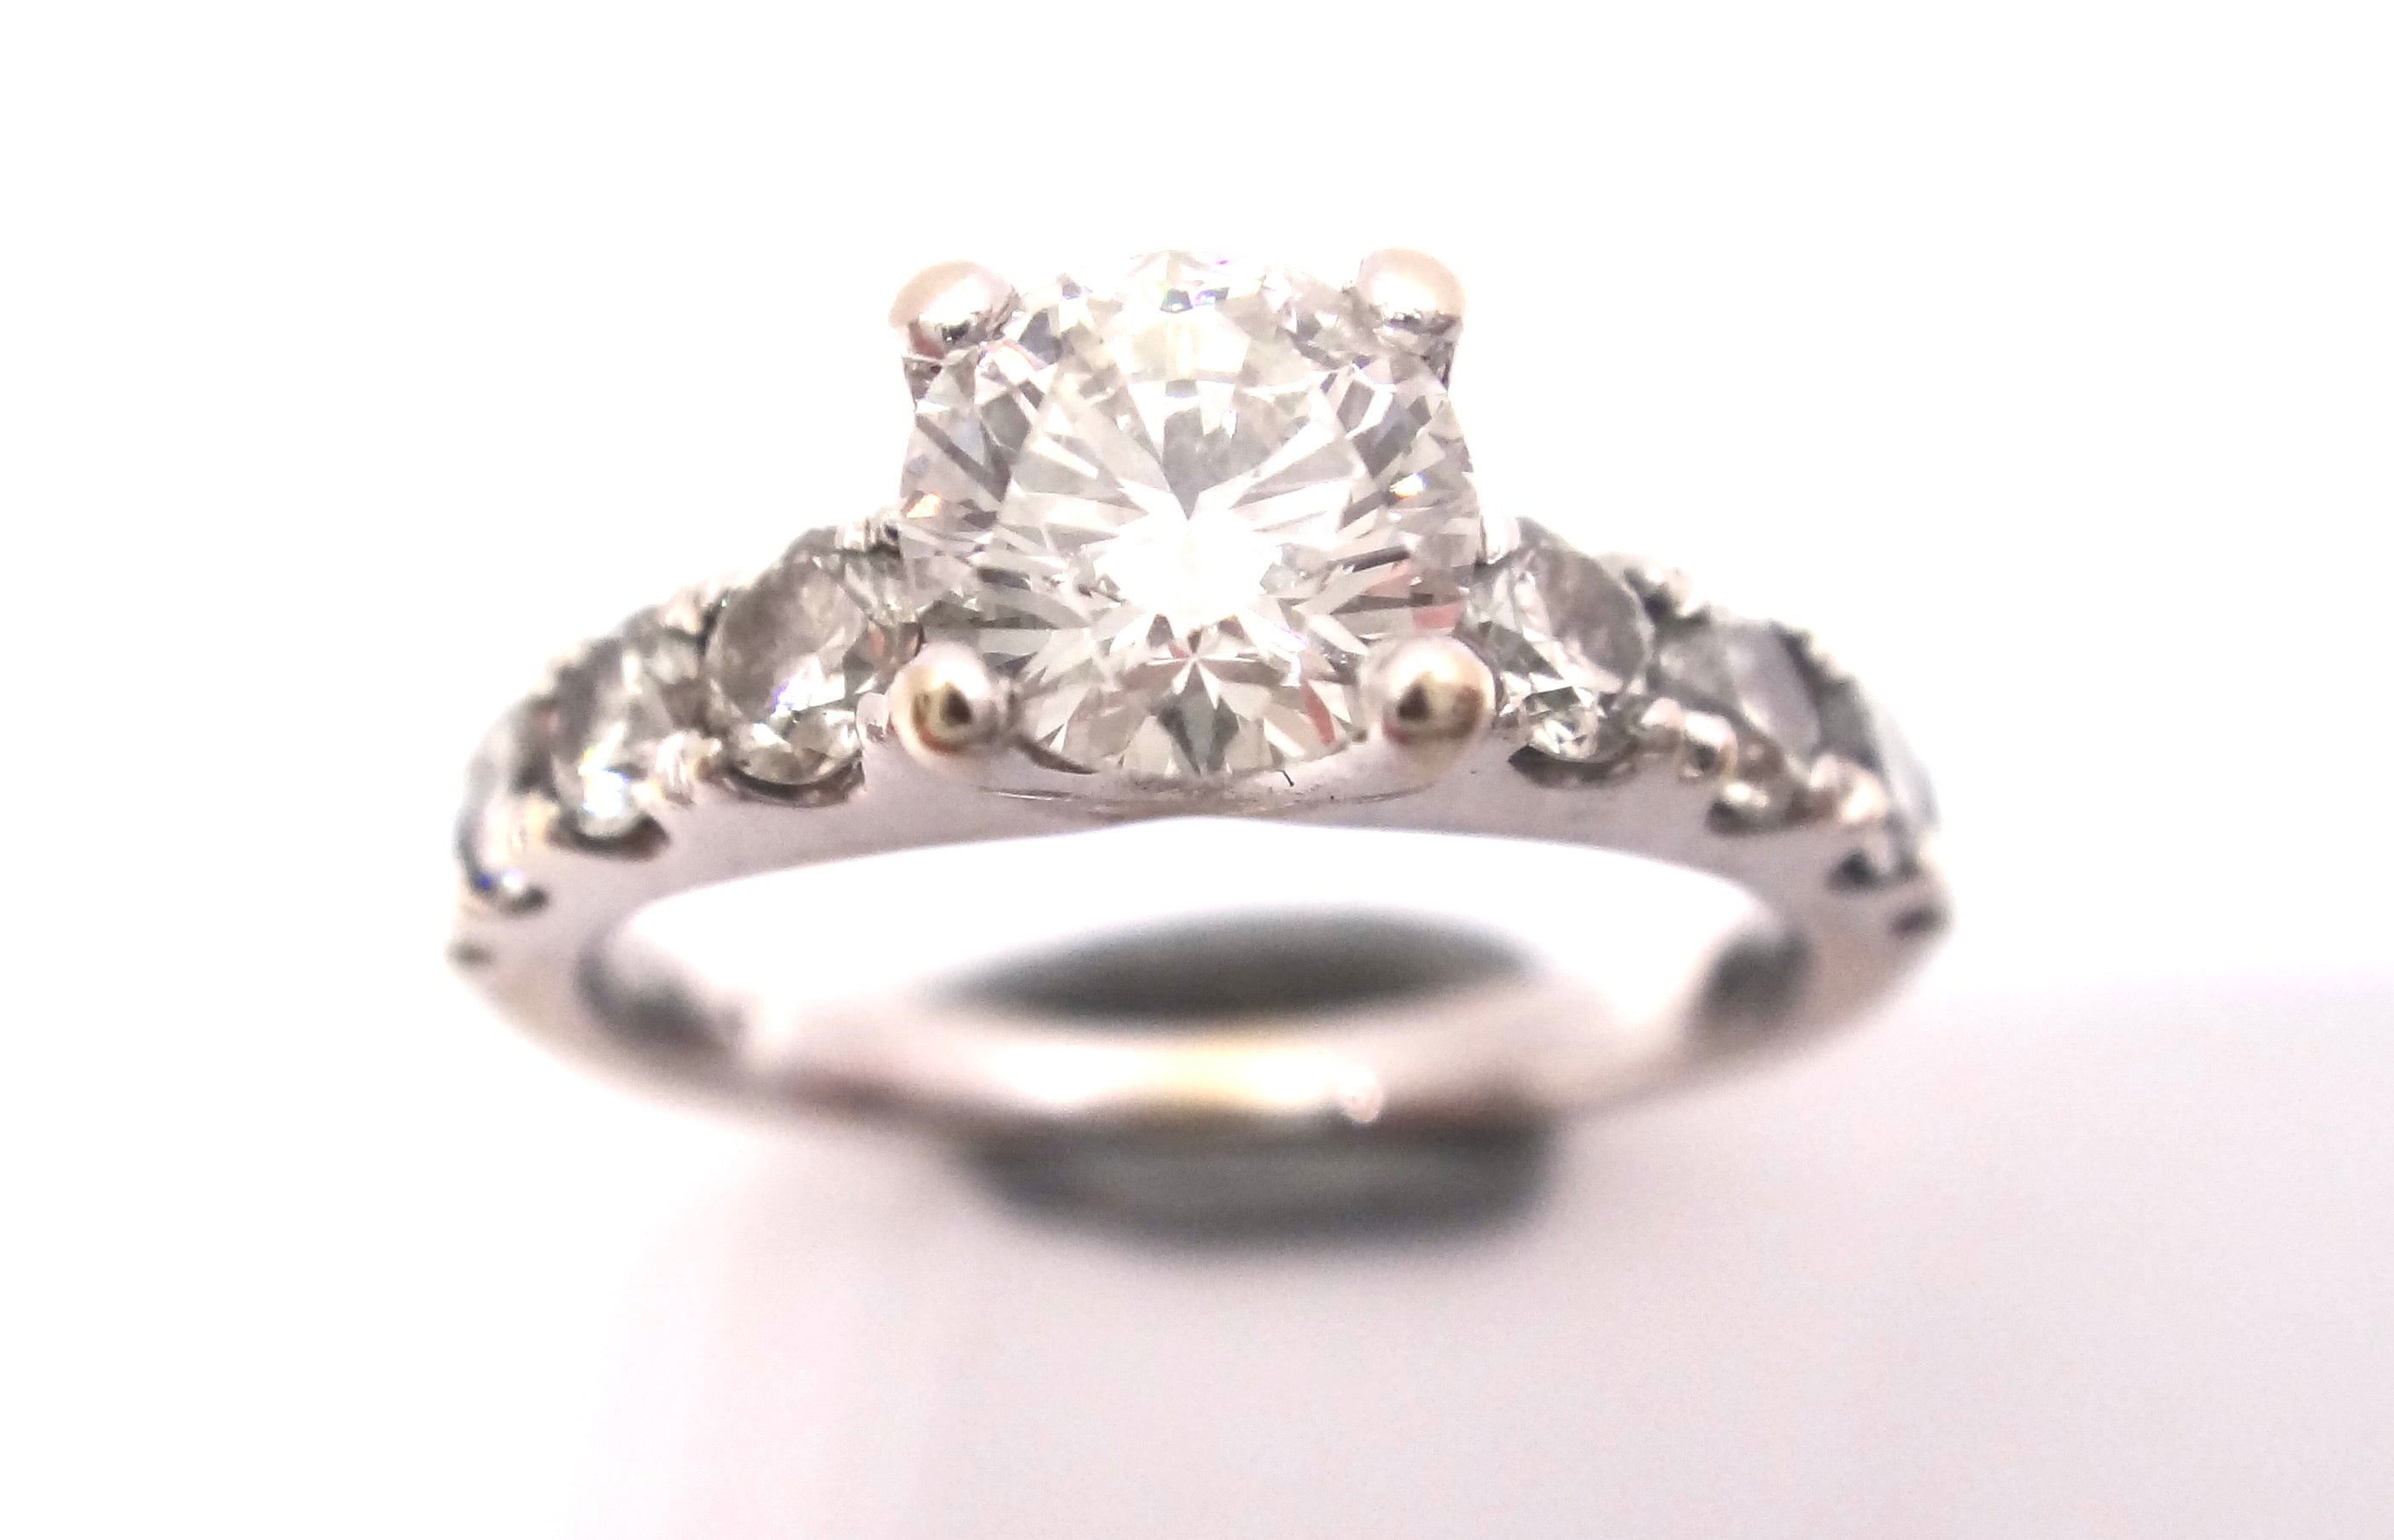 18CT White GOLD & Multi Brilliant Cut DIAMOND Ring VAL $6,050